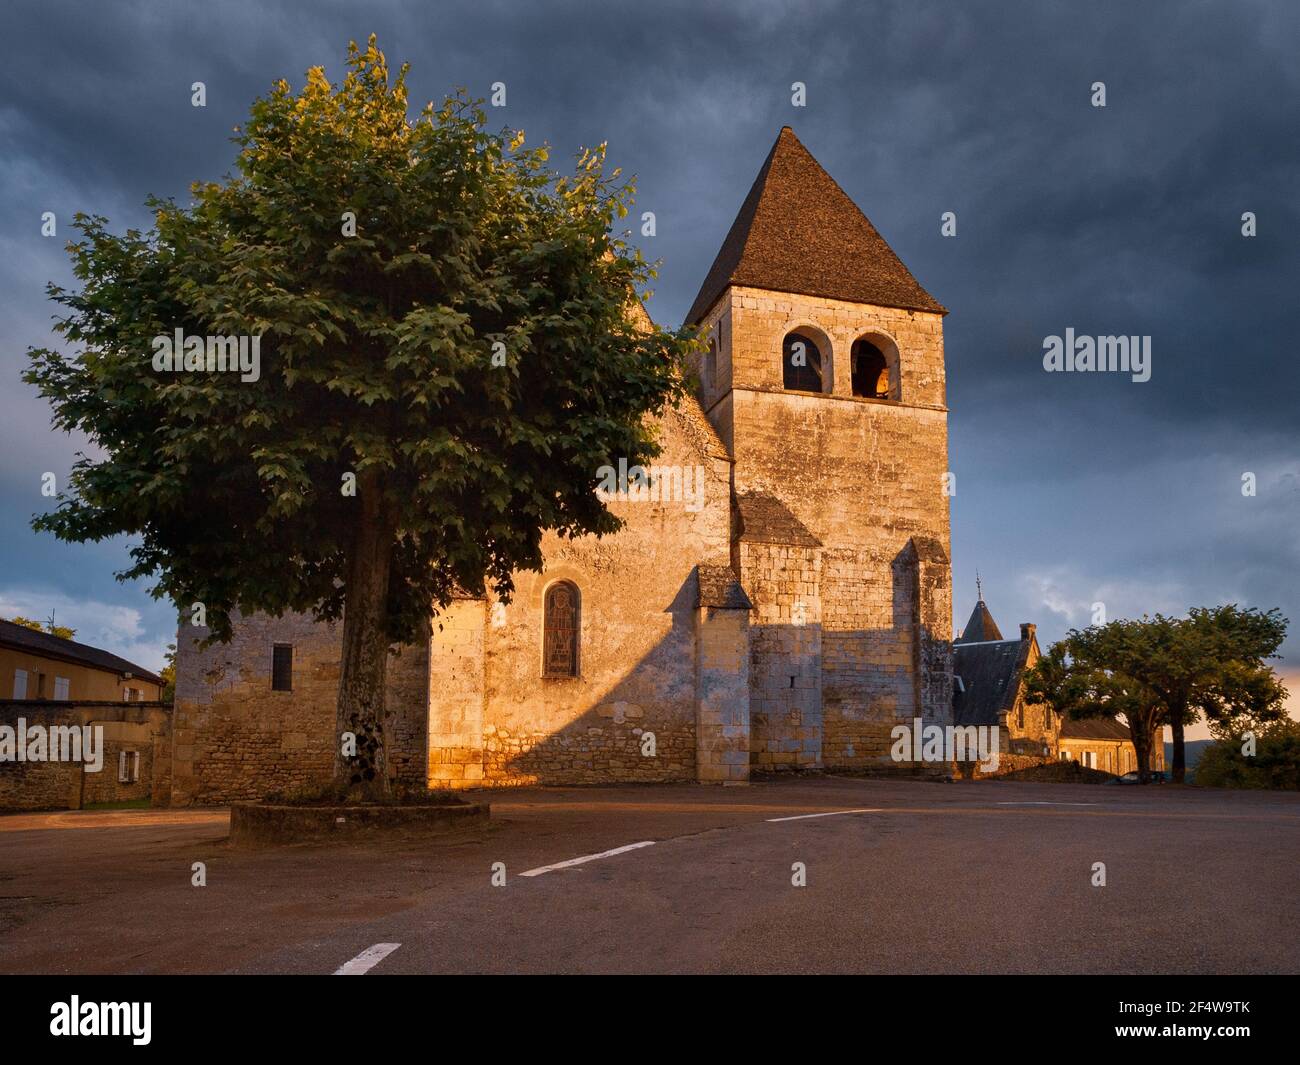 Una iglesia de pueblo en la región de Dordoña de Francia Église Saint-Martin de Vitrac. Vitrac es un pueblo francés a pocas millas fuera de Sarlat Foto de stock